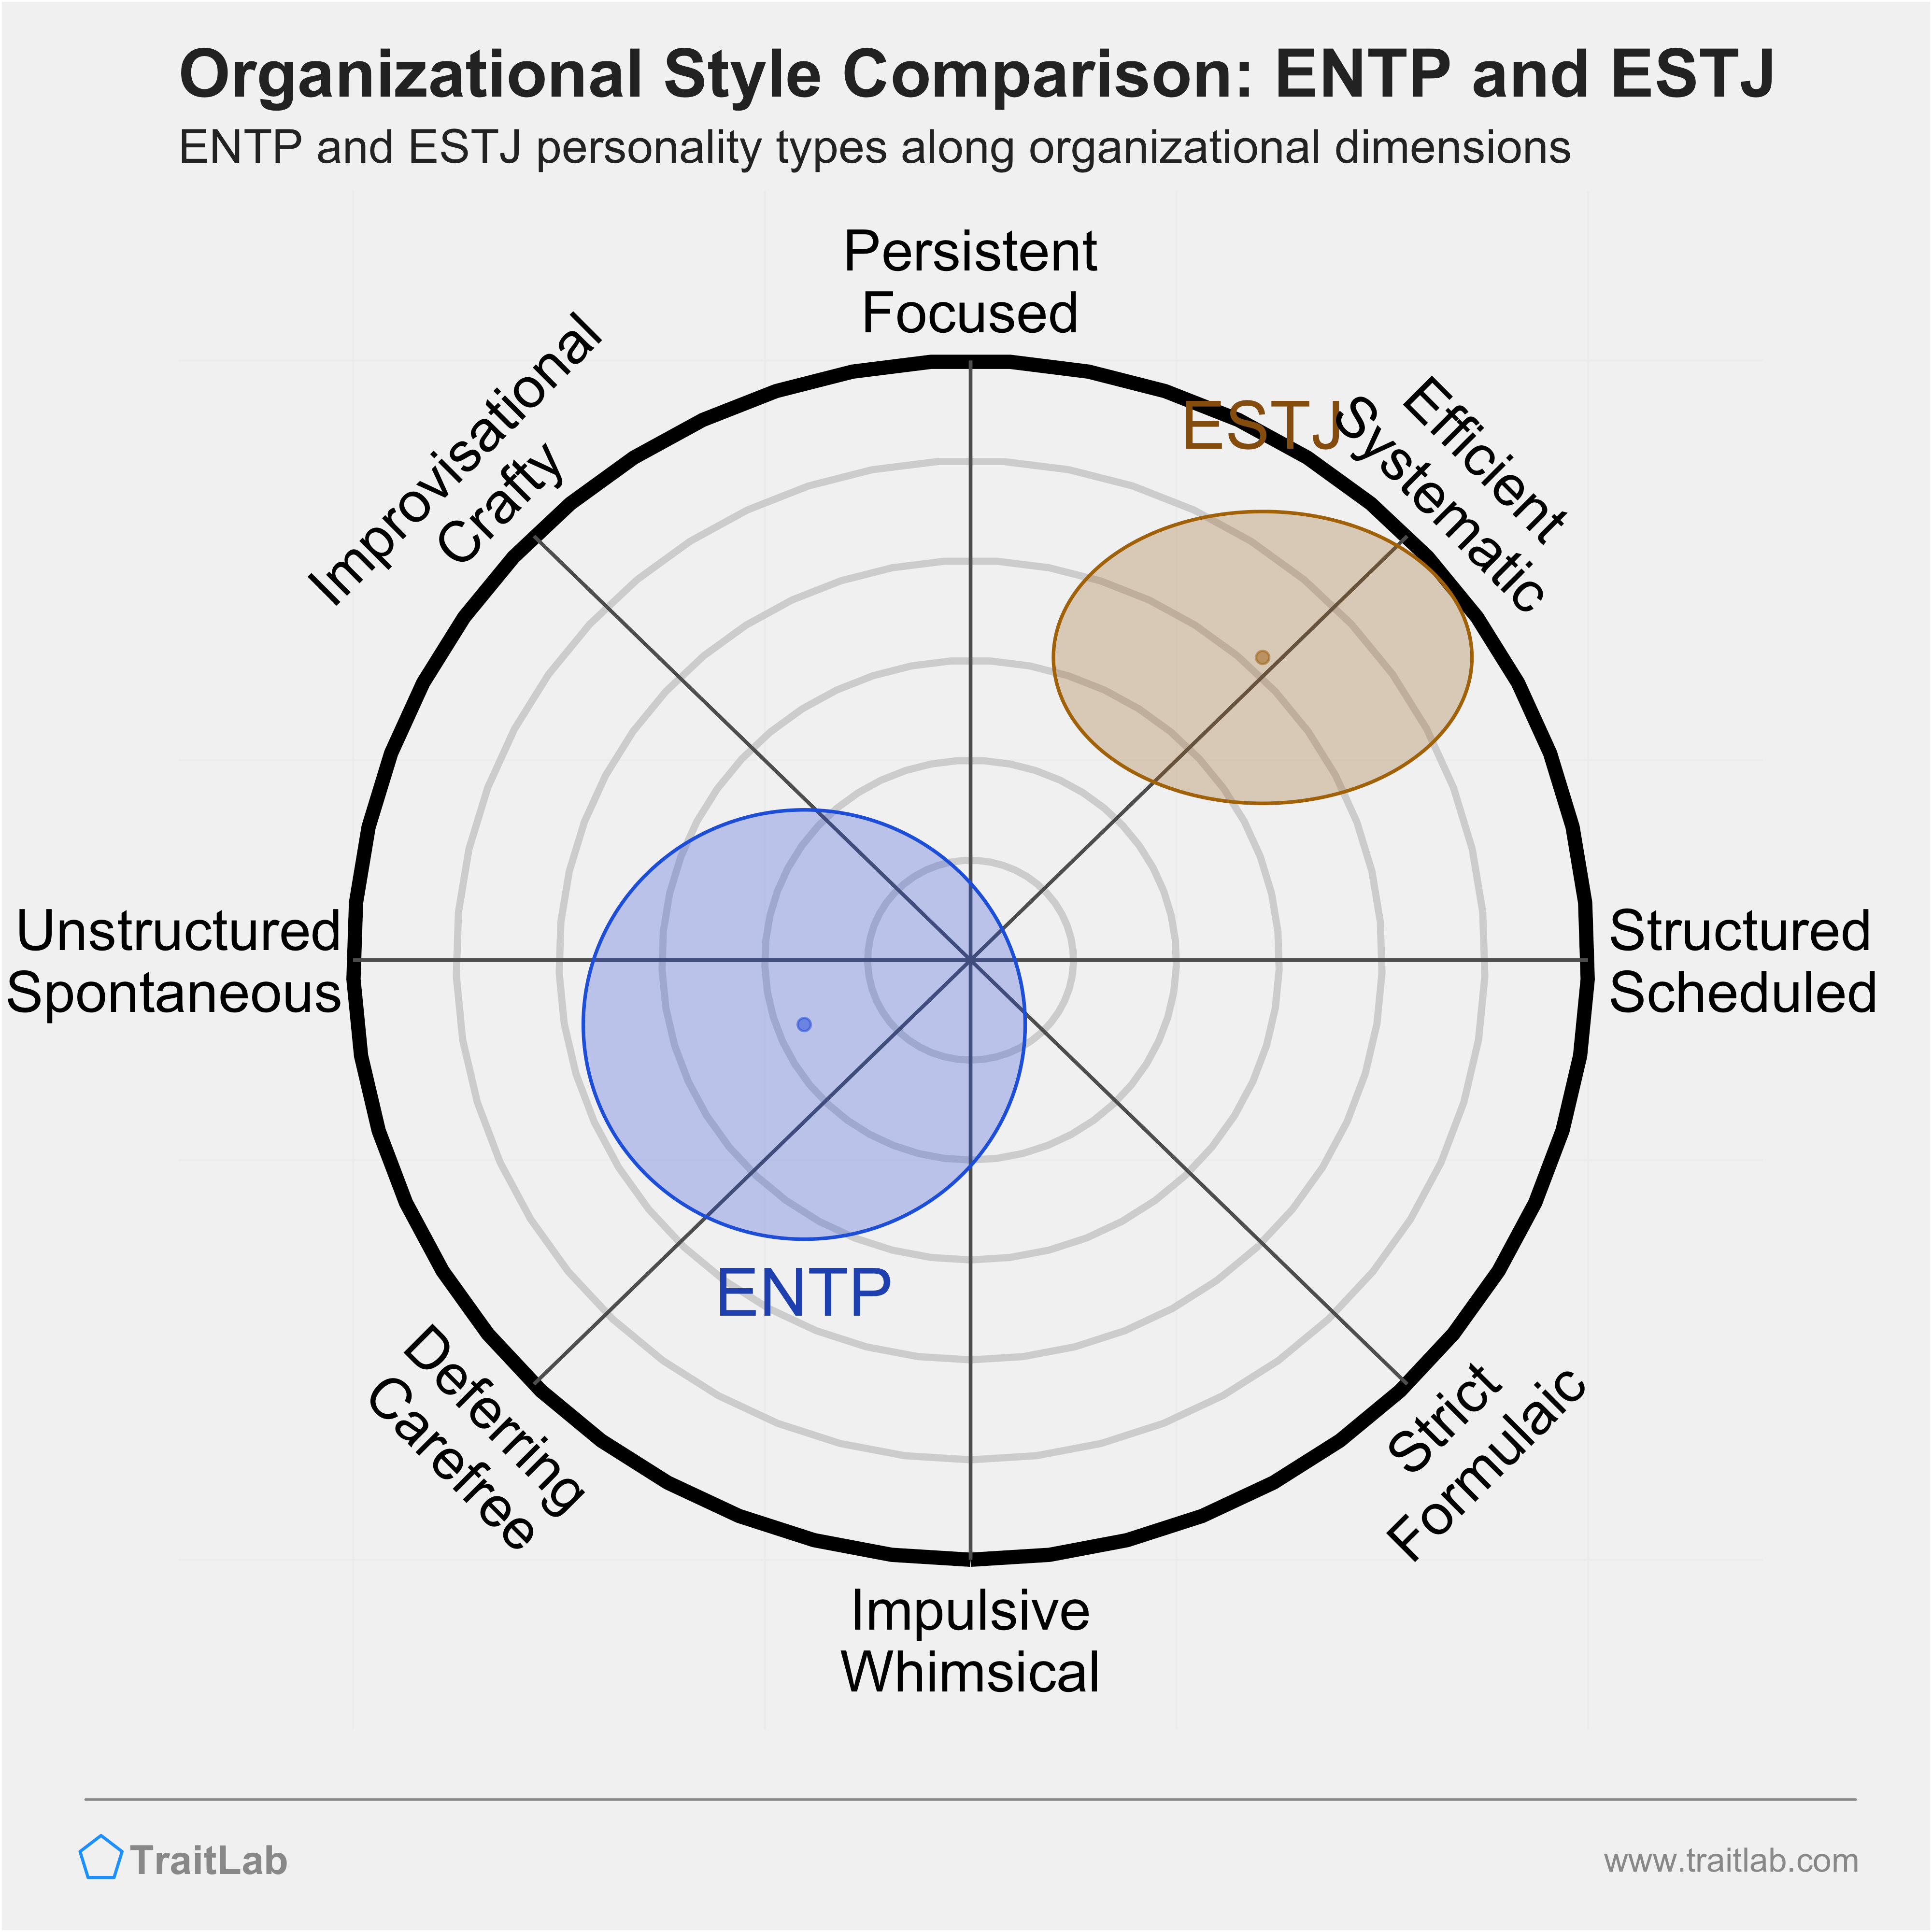 ENTP and ESTJ comparison across organizational dimensions